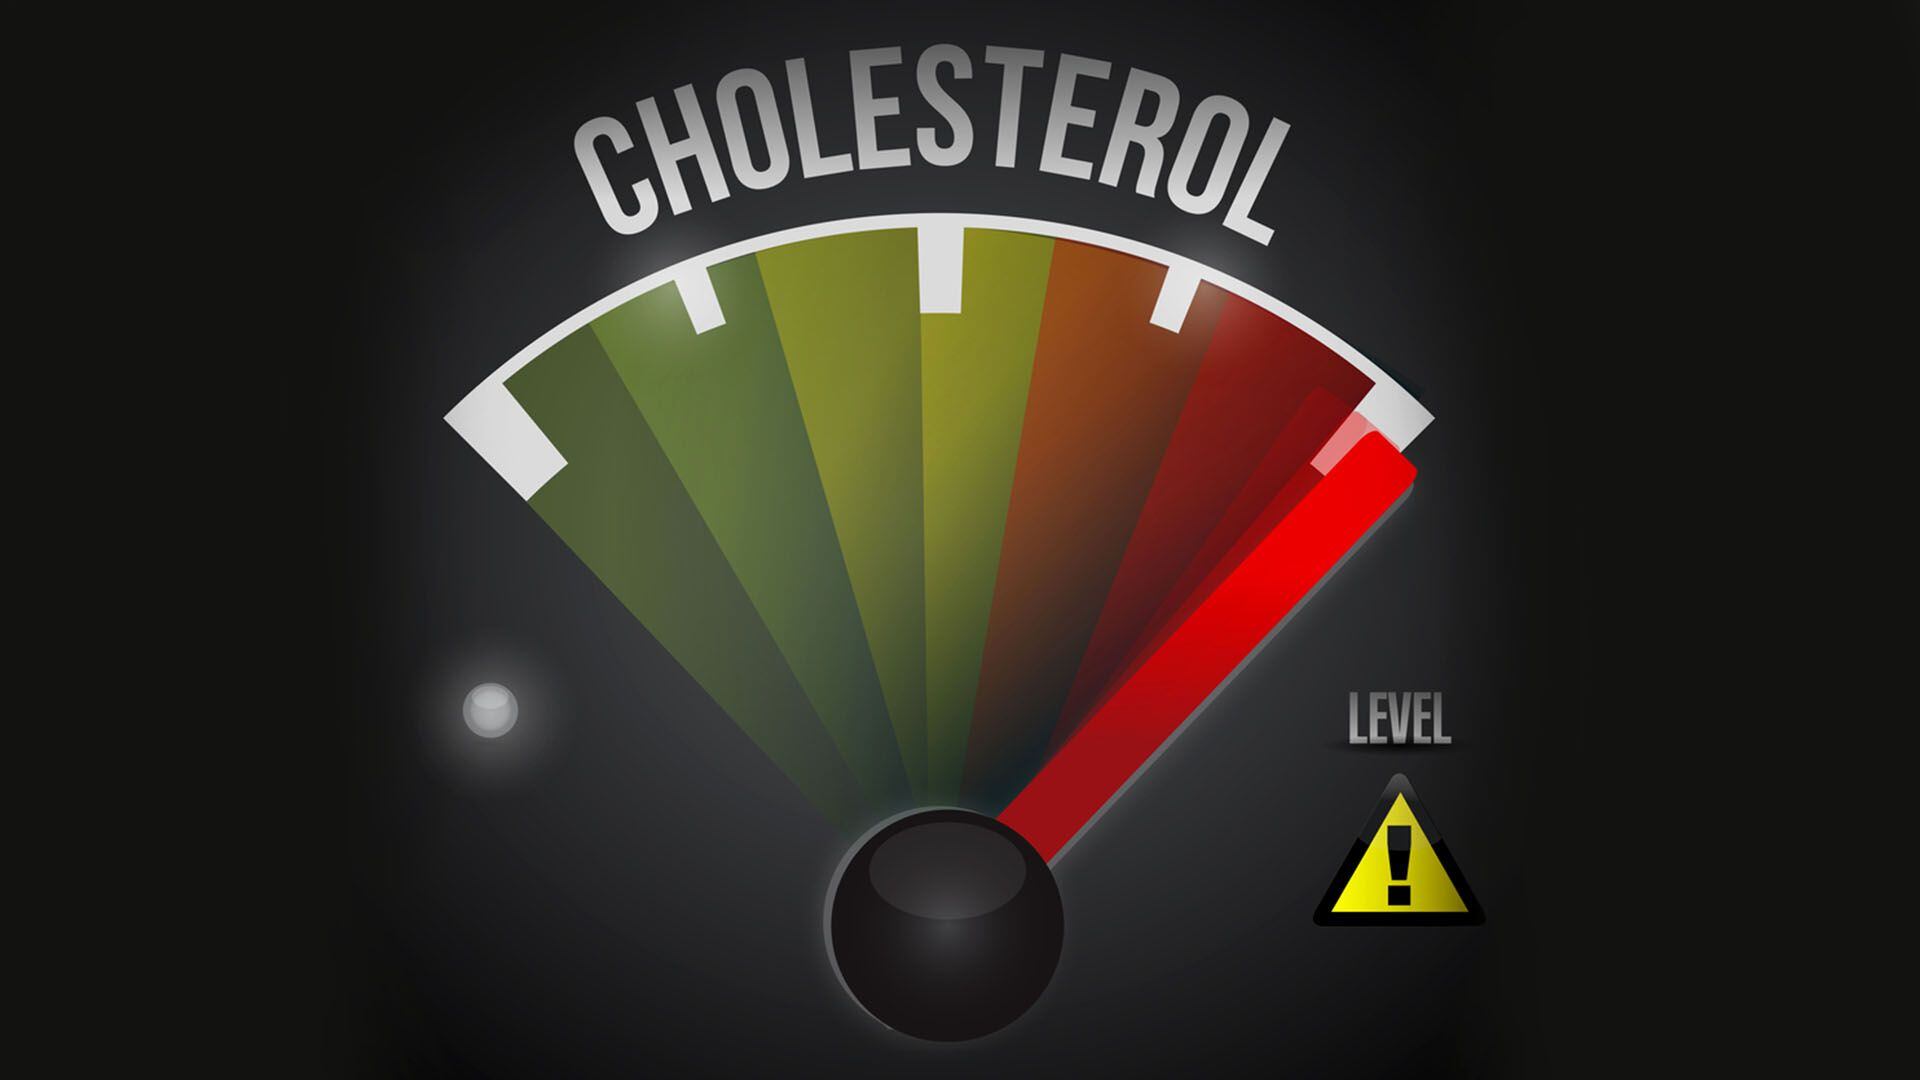 Es importante hacer análisis de sangre periódicos para monitorear los niveles de colesterol en sangre (162)